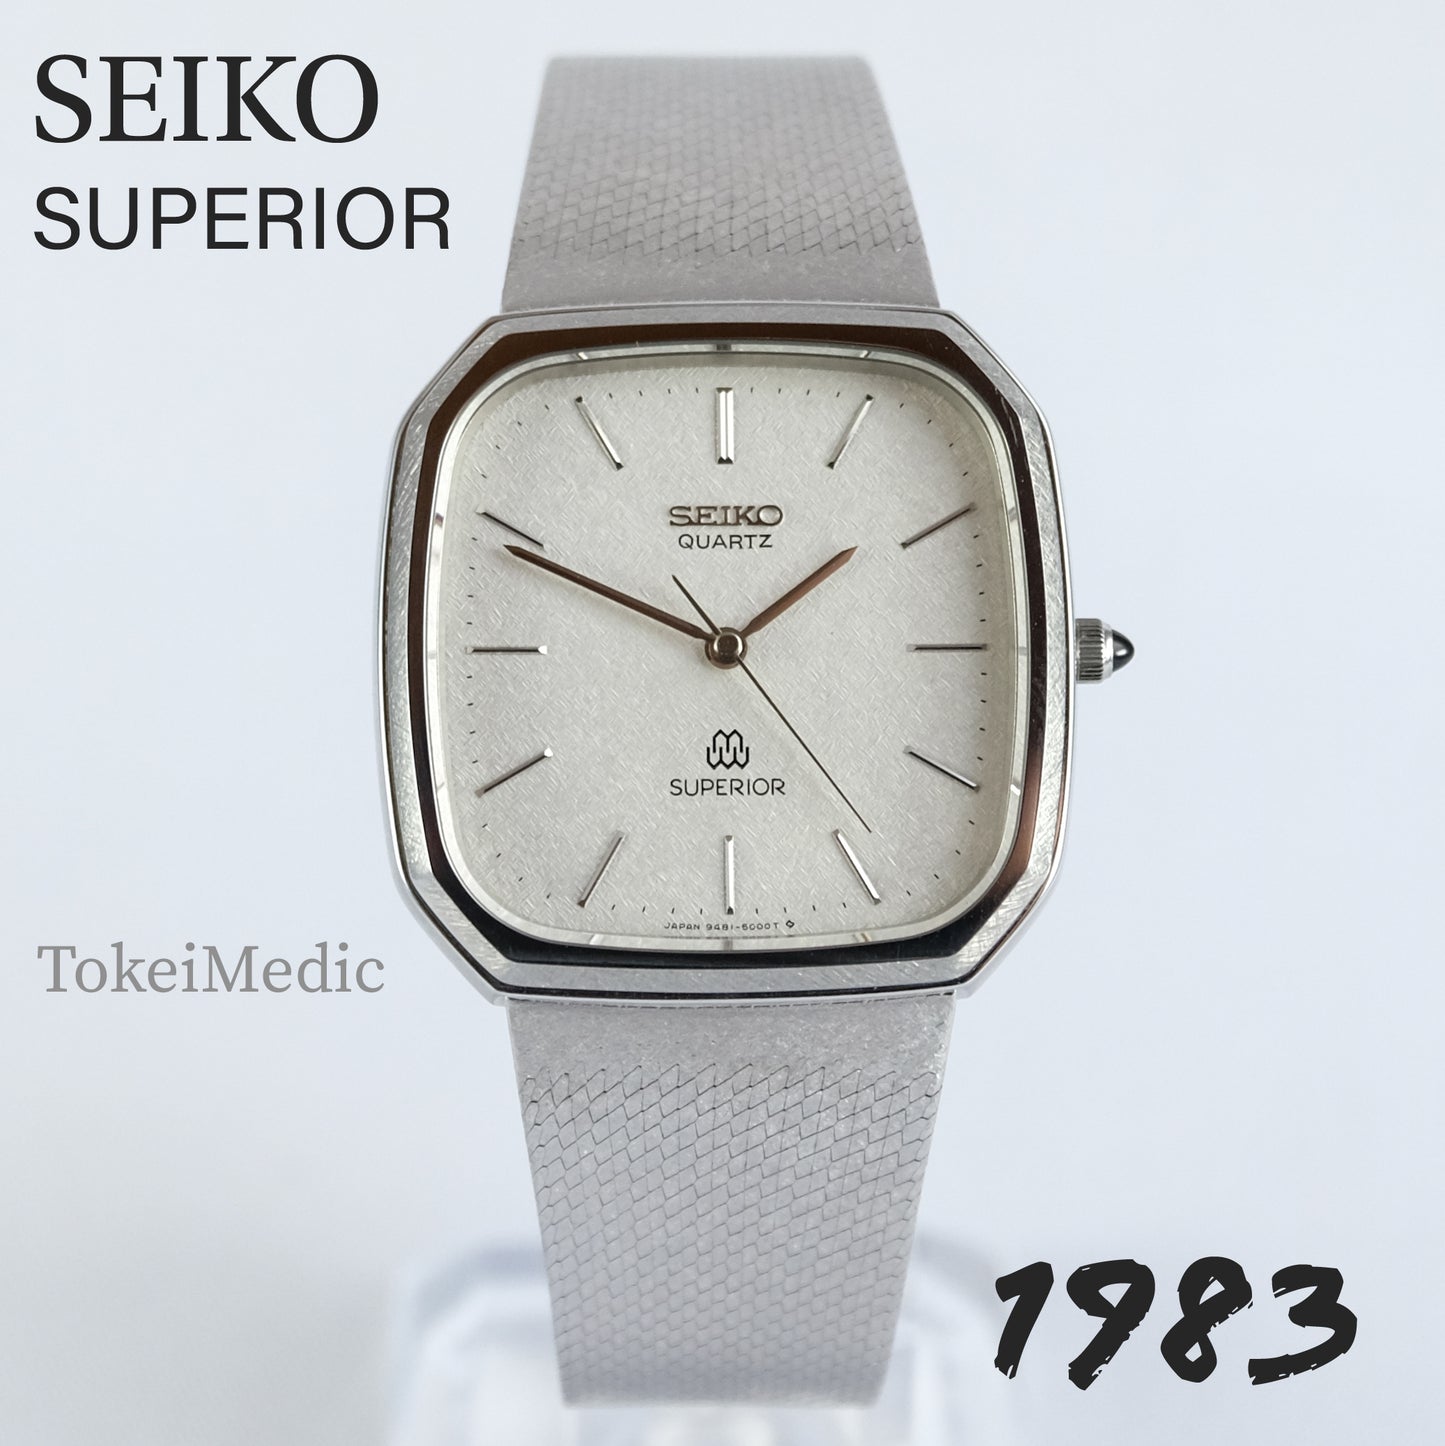 1983 Seiko Superior 9481-5000